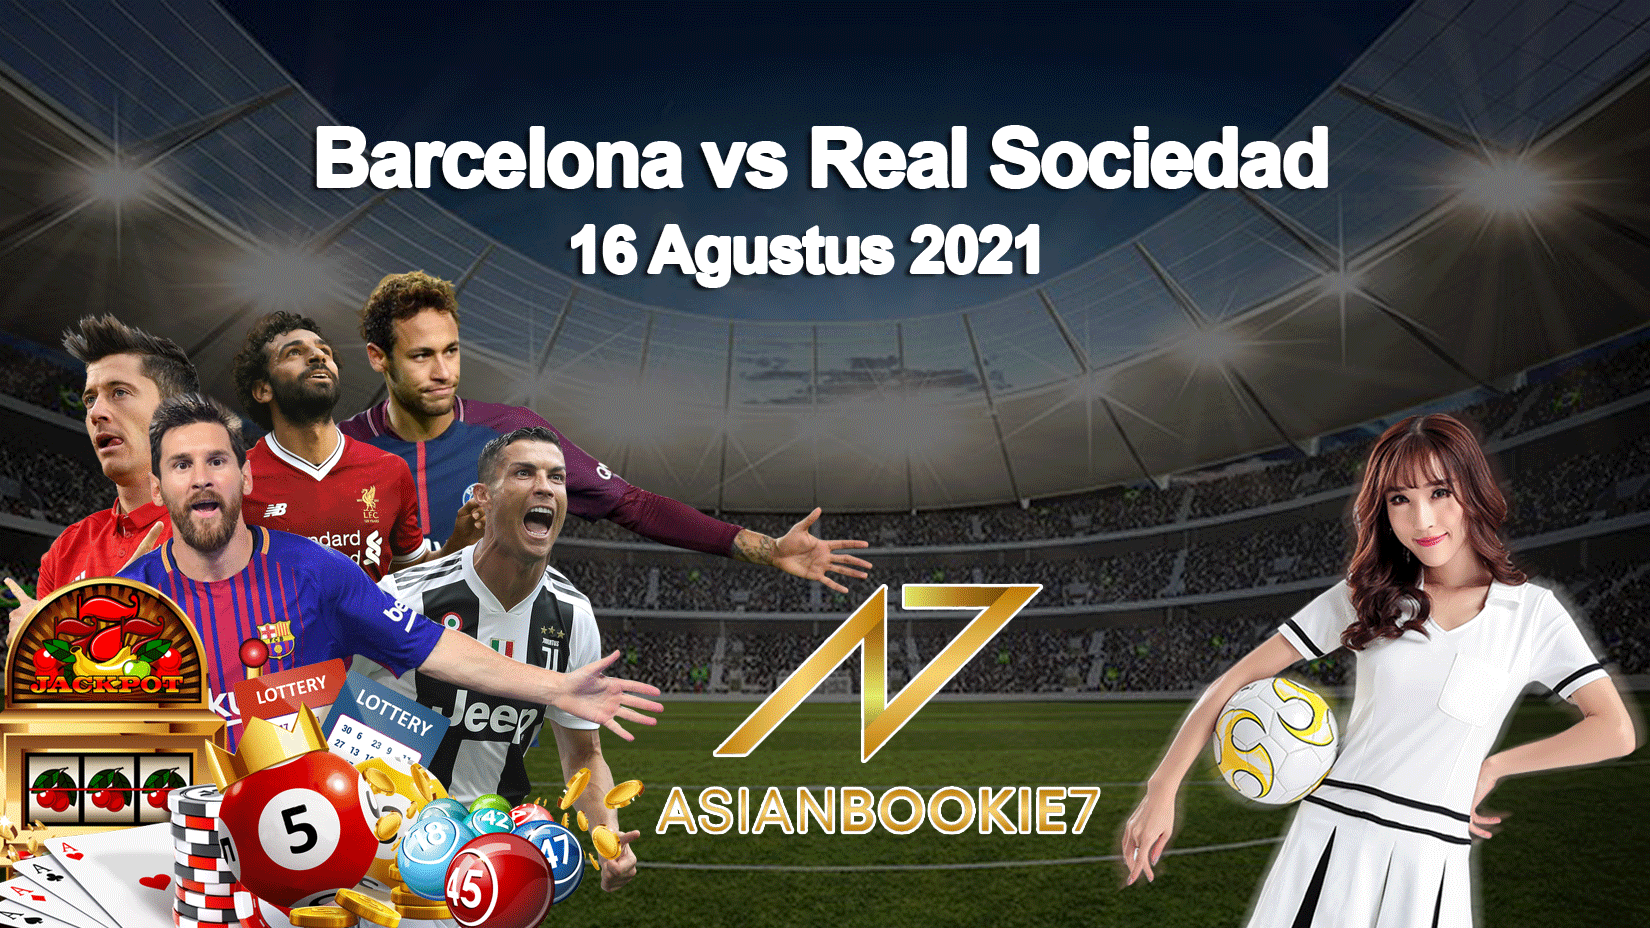 Prediksi Barcelona vs Real Sociedad 16 Agustus 2021